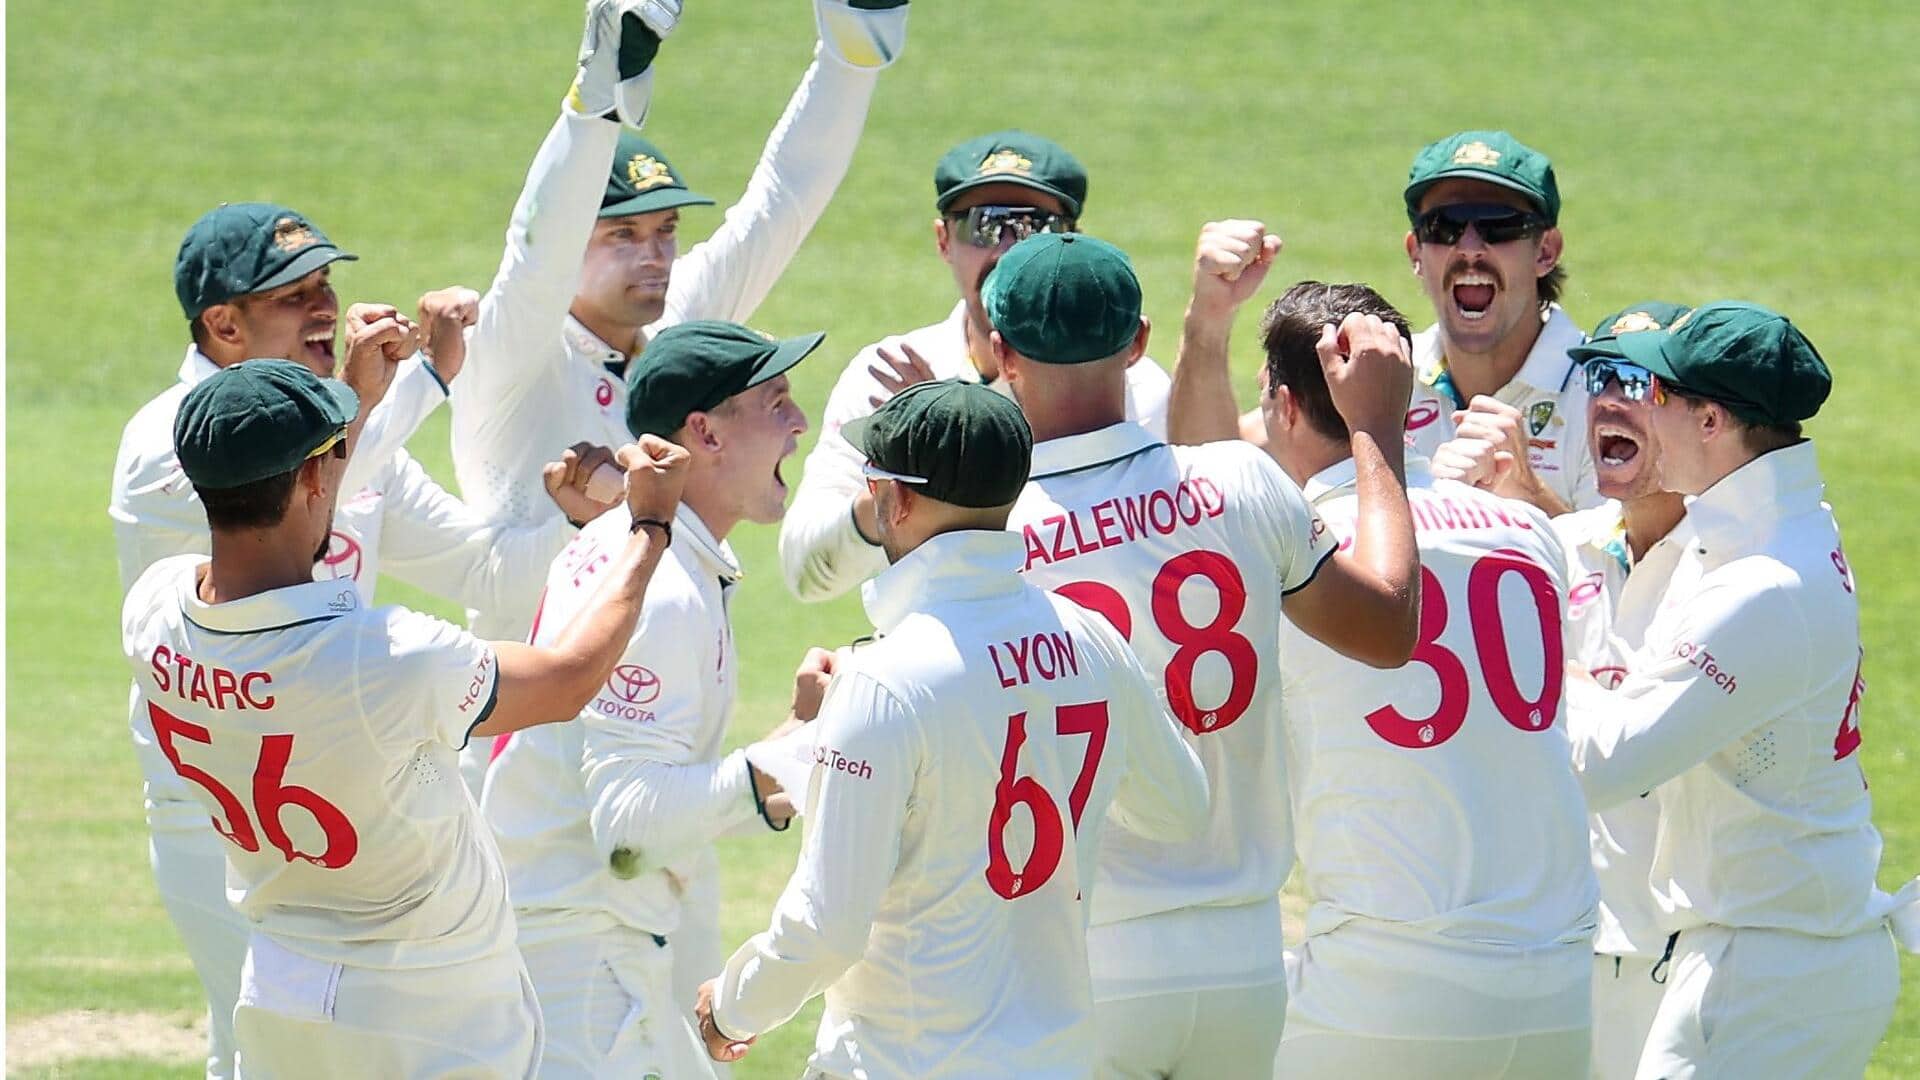 तीसरा टेस्ट: ऑस्ट्रेलिया ने बढ़ाया जीत की ओर कदम, तीसरे दिन पाकिस्तान ने किया निराश